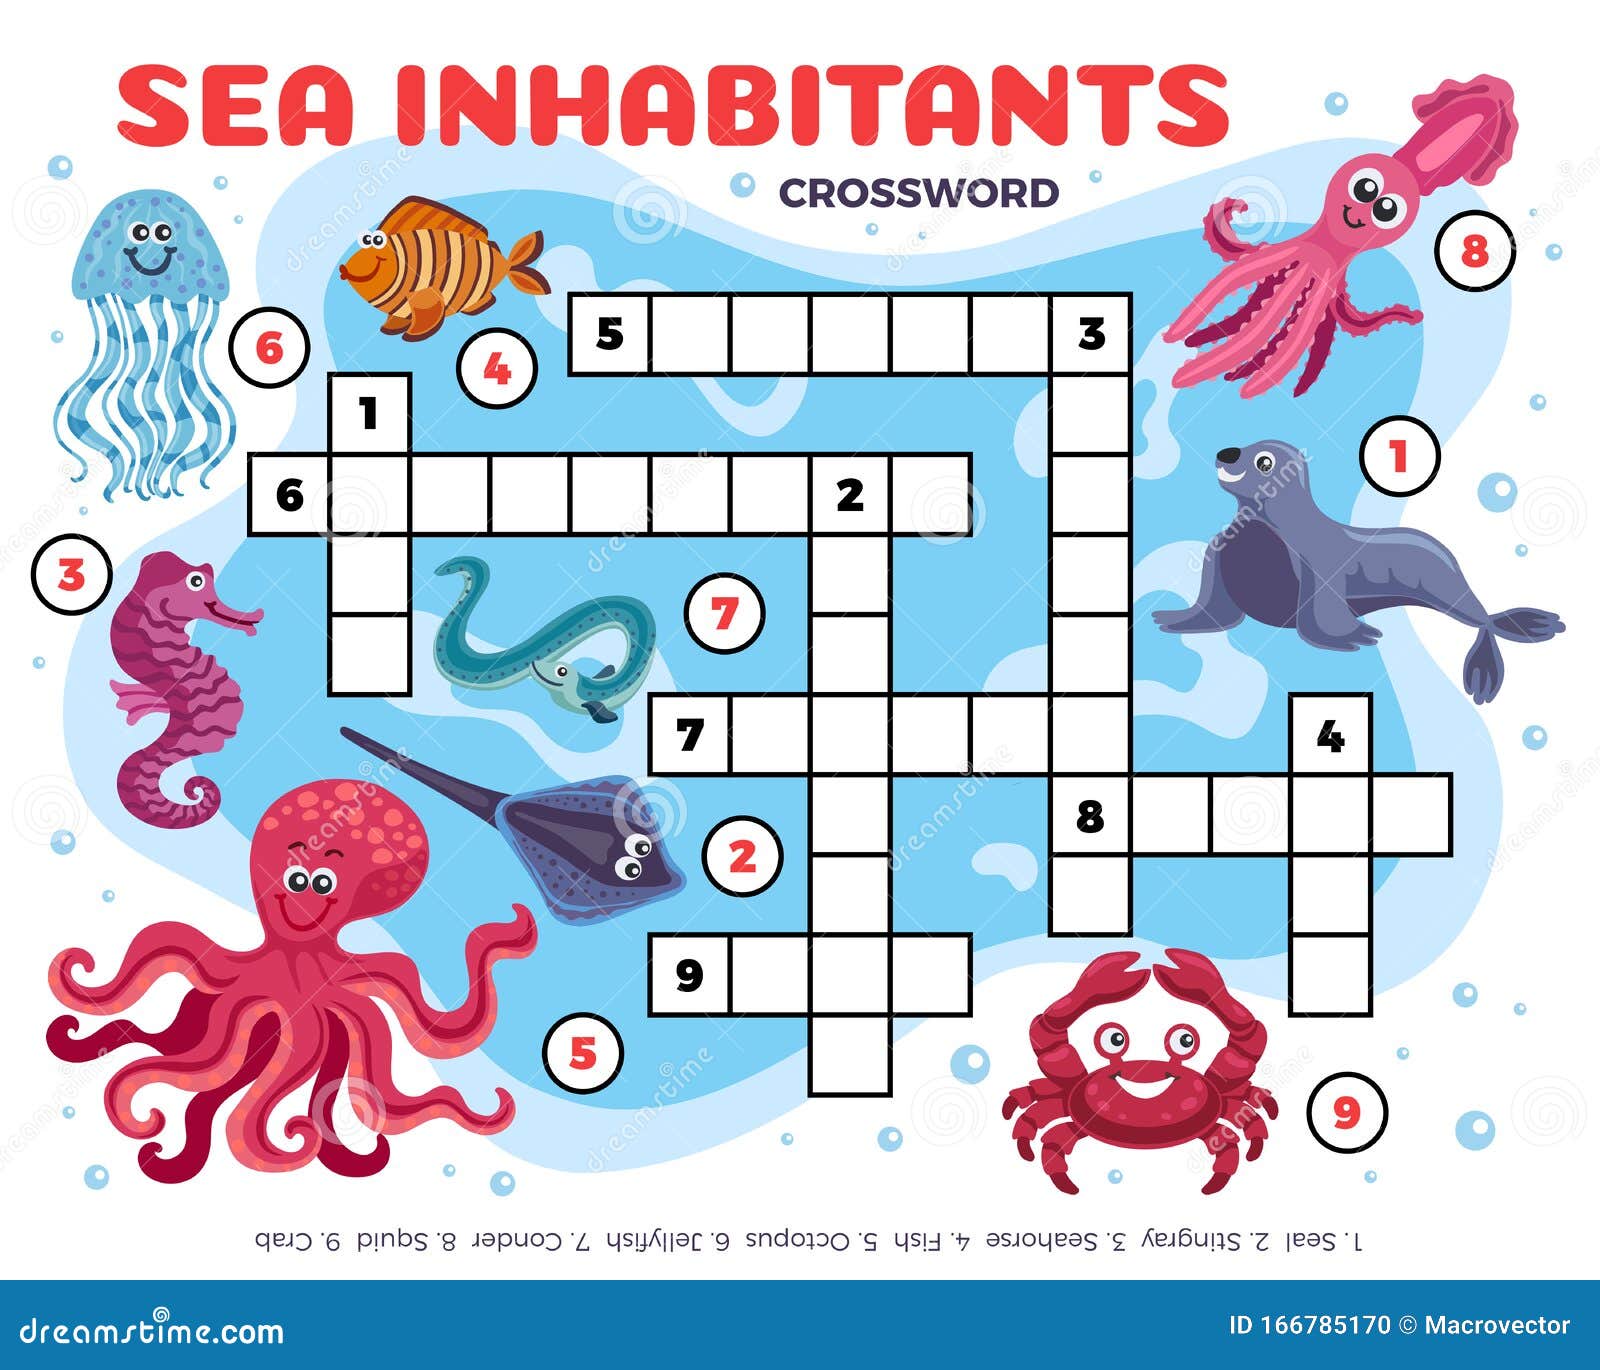 Crossword more. Кроссворд на тему морские обитатели. Кроссворд на морскую тематику для детей. Кроссворд морские обитатели для детей. Кроссворд обитатели морей.